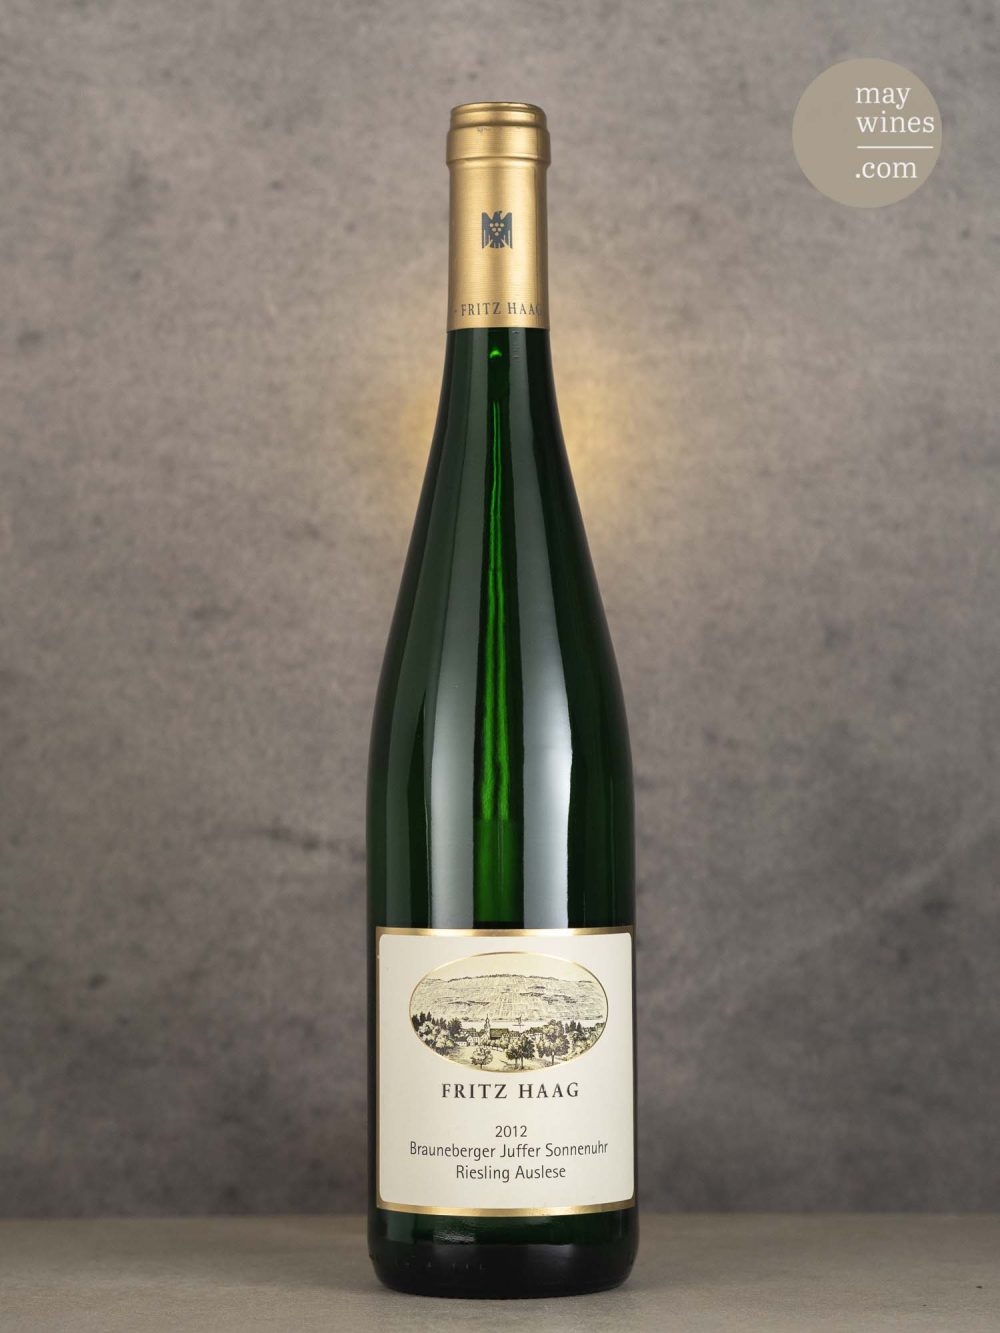 May Wines – Süßwein – 2012 Brauneberger Juffer Sonnenuhr Riesling Auslese Goldkapsel - Fritz Haag